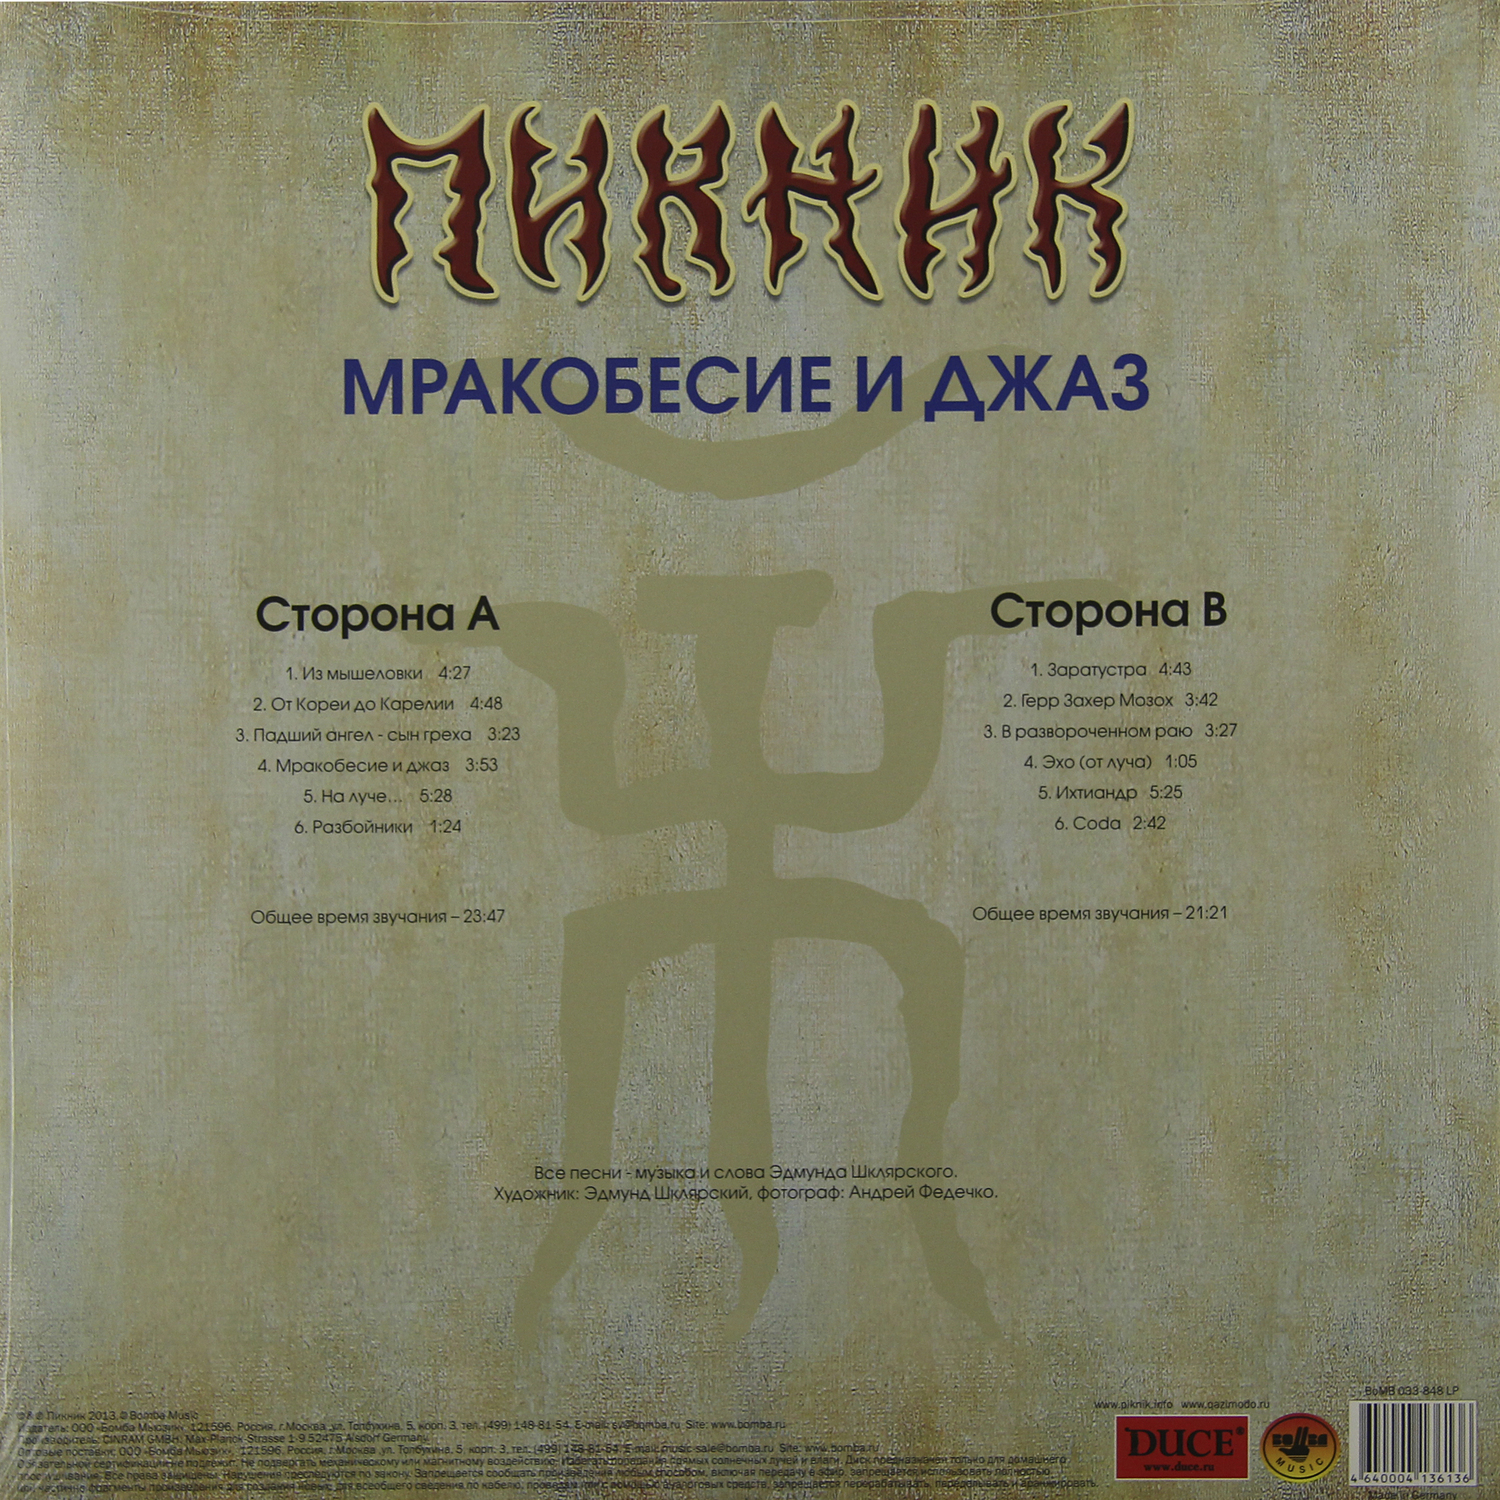 Пикник - Мракобесие и Джаз (BoMB 033-848 LP)